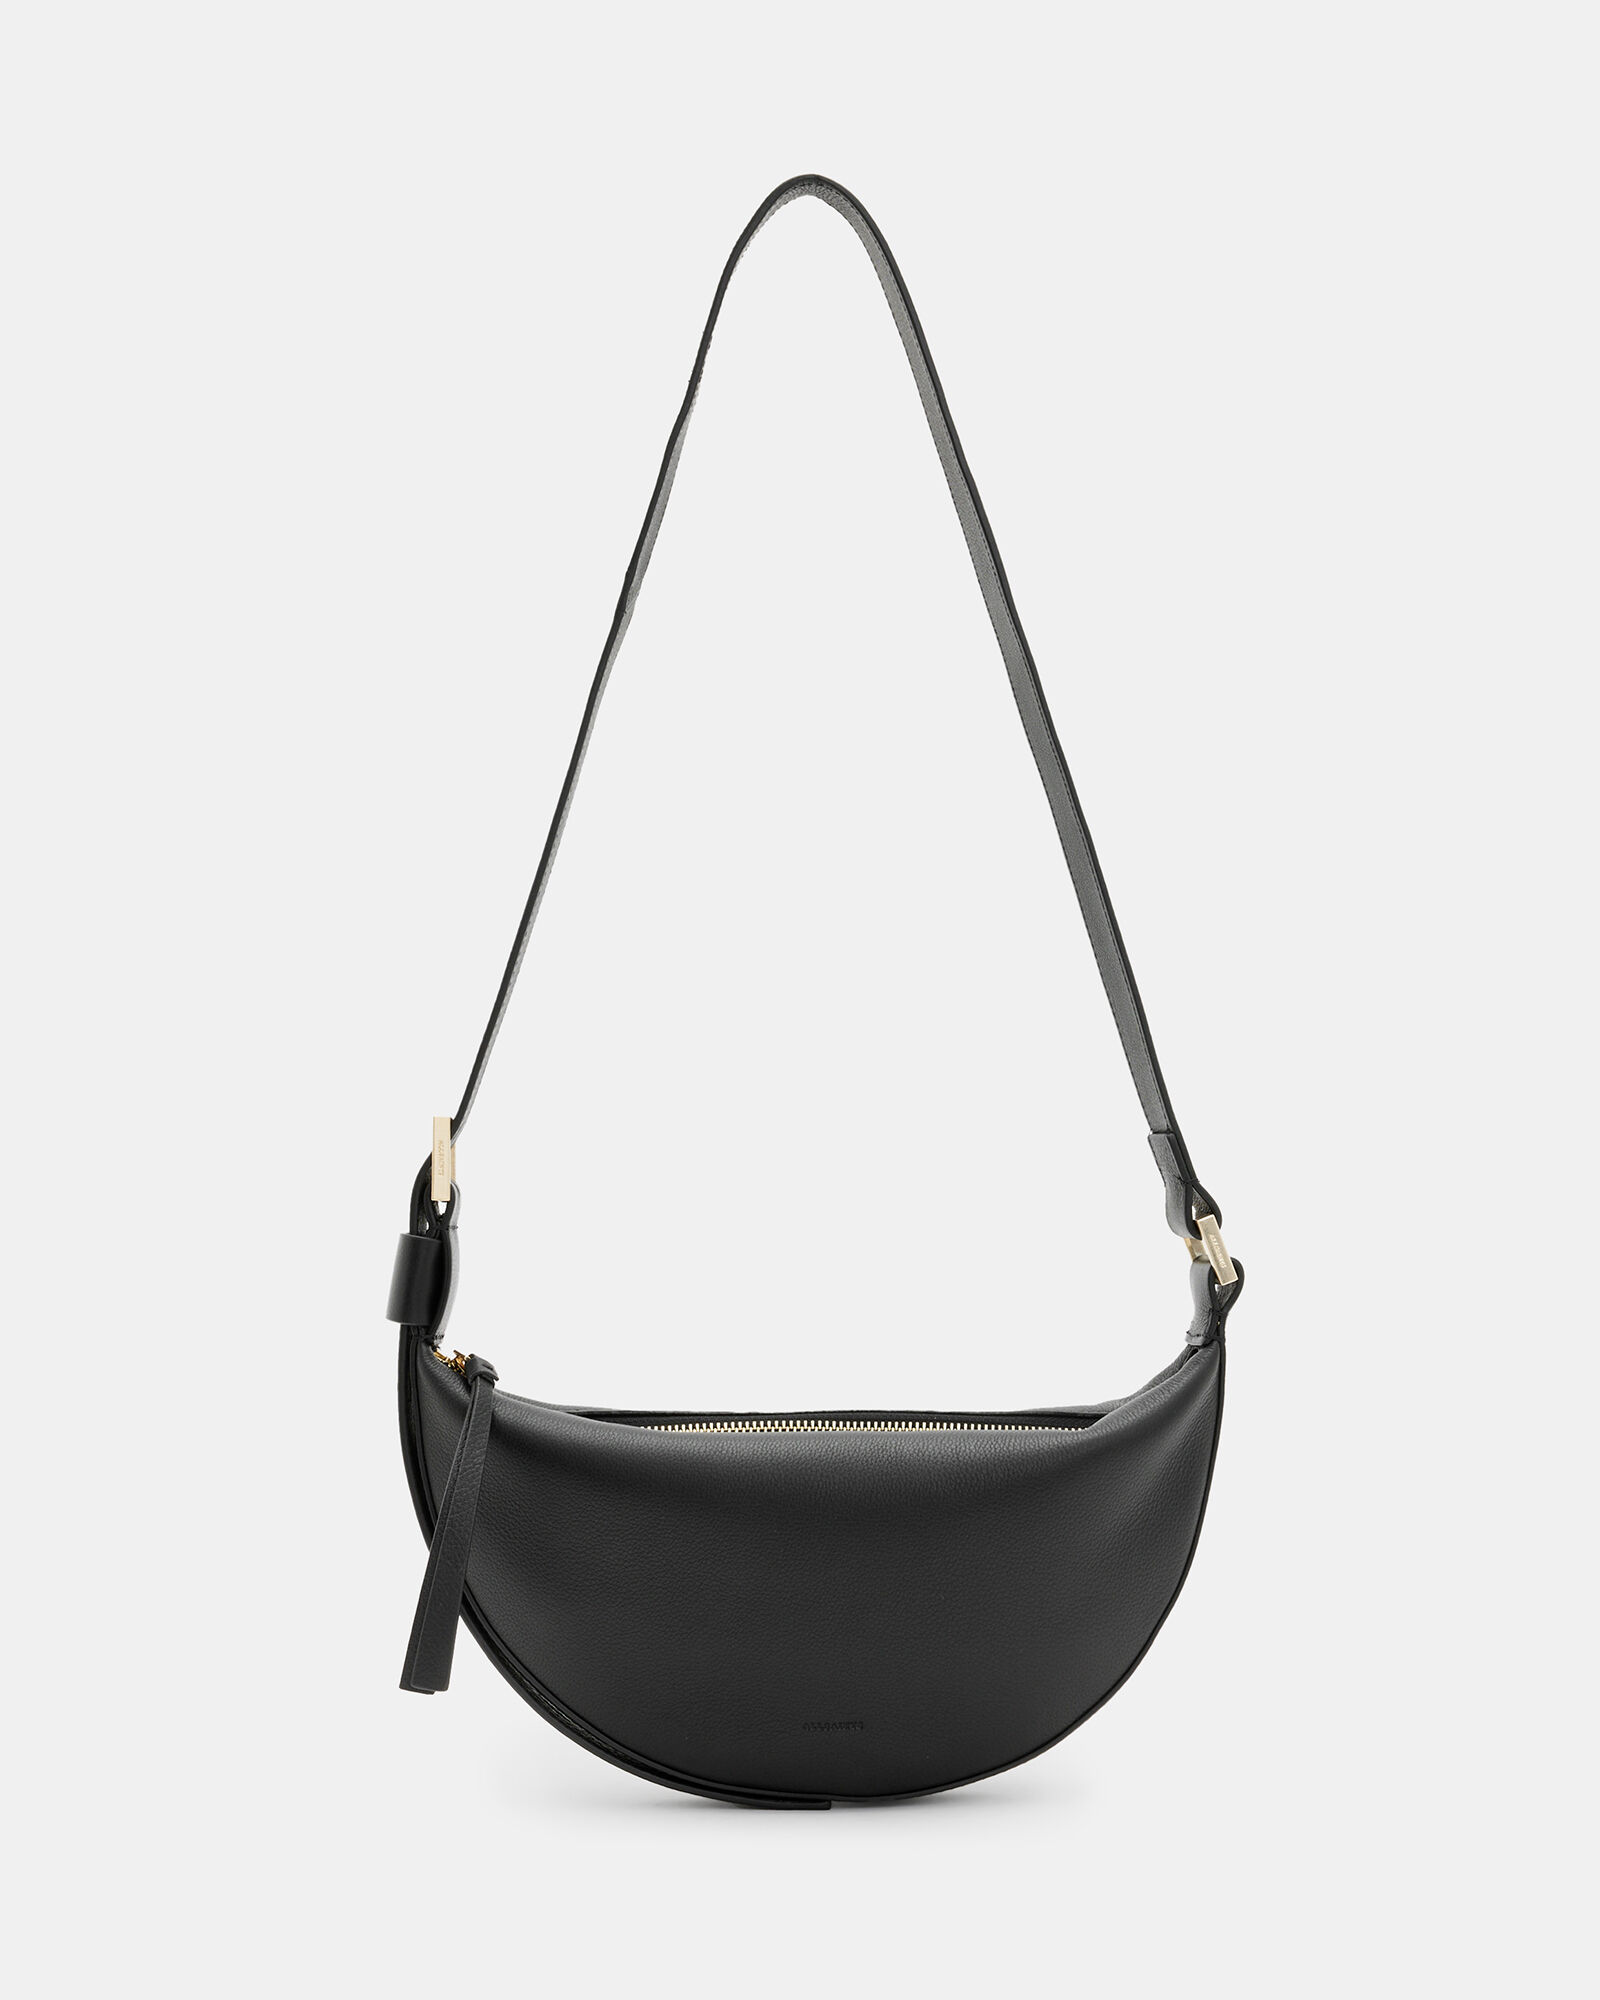 Luxury Designer Mini Kira Chain Shoulder Bag With Chain Strap Wrinkle Free  Pochette, Crossbody Handbag, Card Holder, And Messenger Purse For Women  From Ljkaixin0921, $33.17 | DHgate.Com